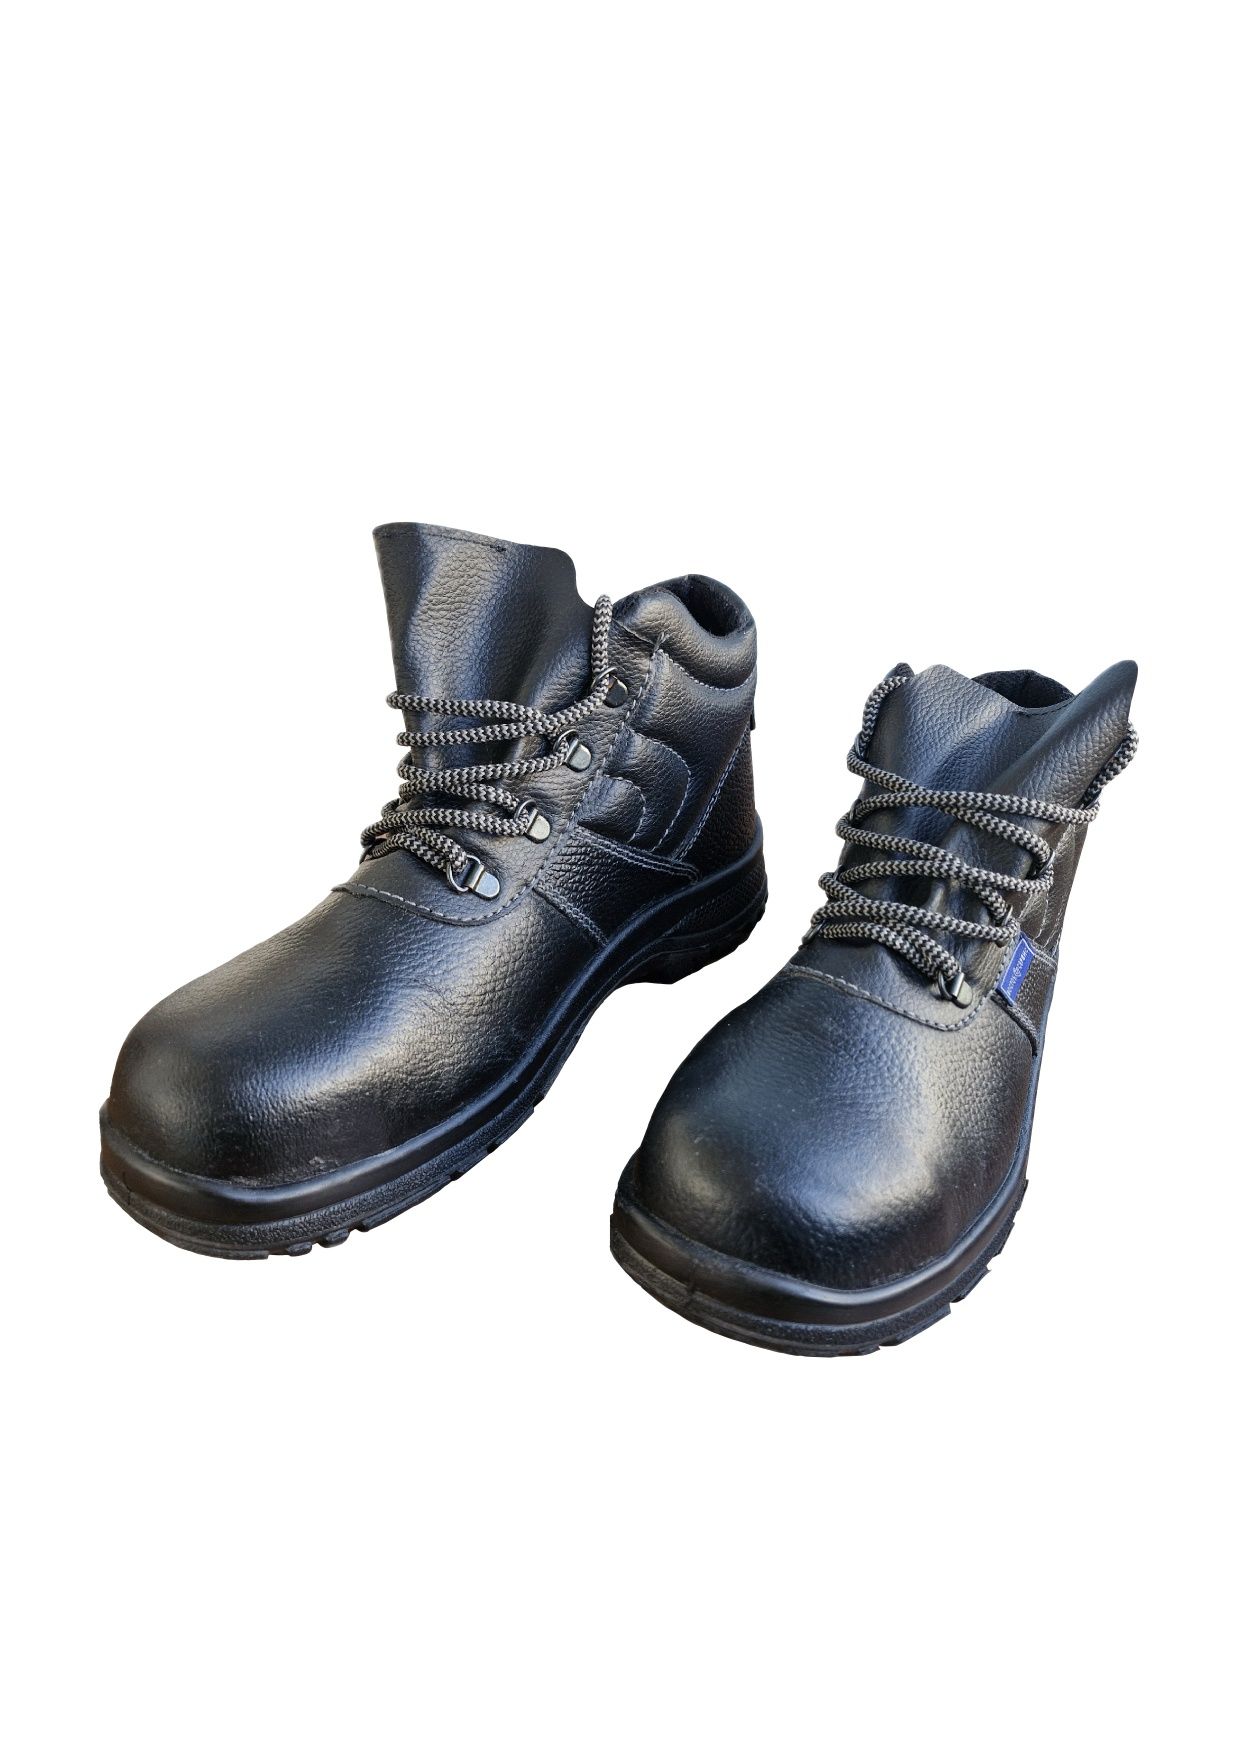 Черевики робочі з металевим підноском (Рабочие ботинки)